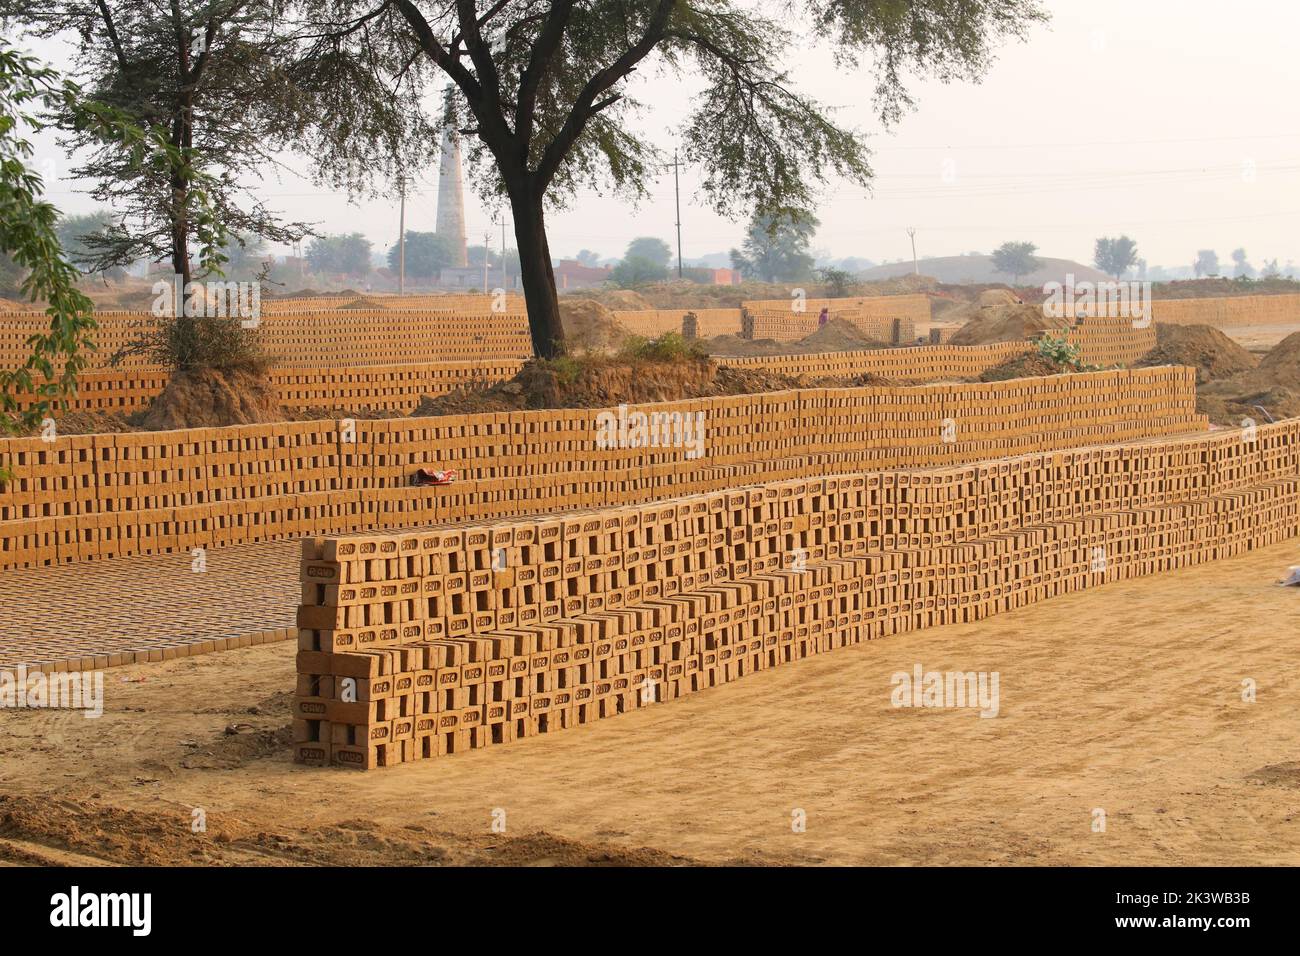 Rewari, Haryana/Indien - Herstellung von Ziegelsteinen. Roher Ziegel, der in Stapeln zum Trocknen ausgelegt ist. Stockfoto